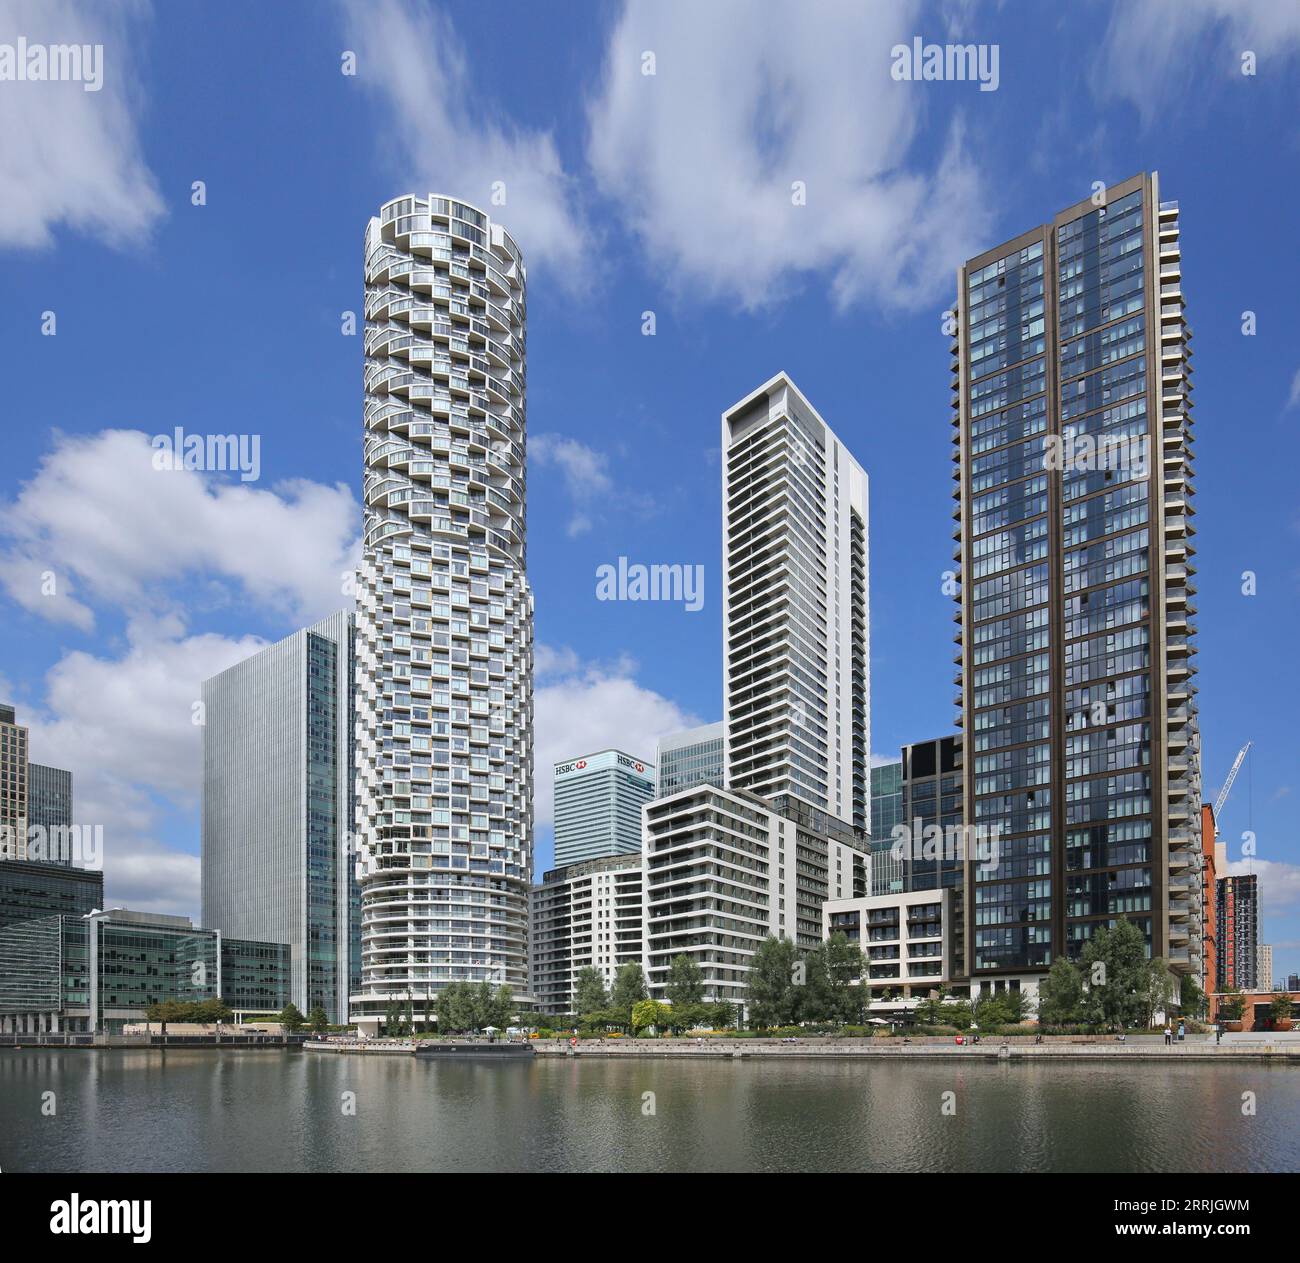 One Park Drive (centro a sinistra), la nuova torre residenziale circolare a Canary Wharf, Londra, Regno Unito, realizzata da Herzog de Meuron Architects Foto Stock